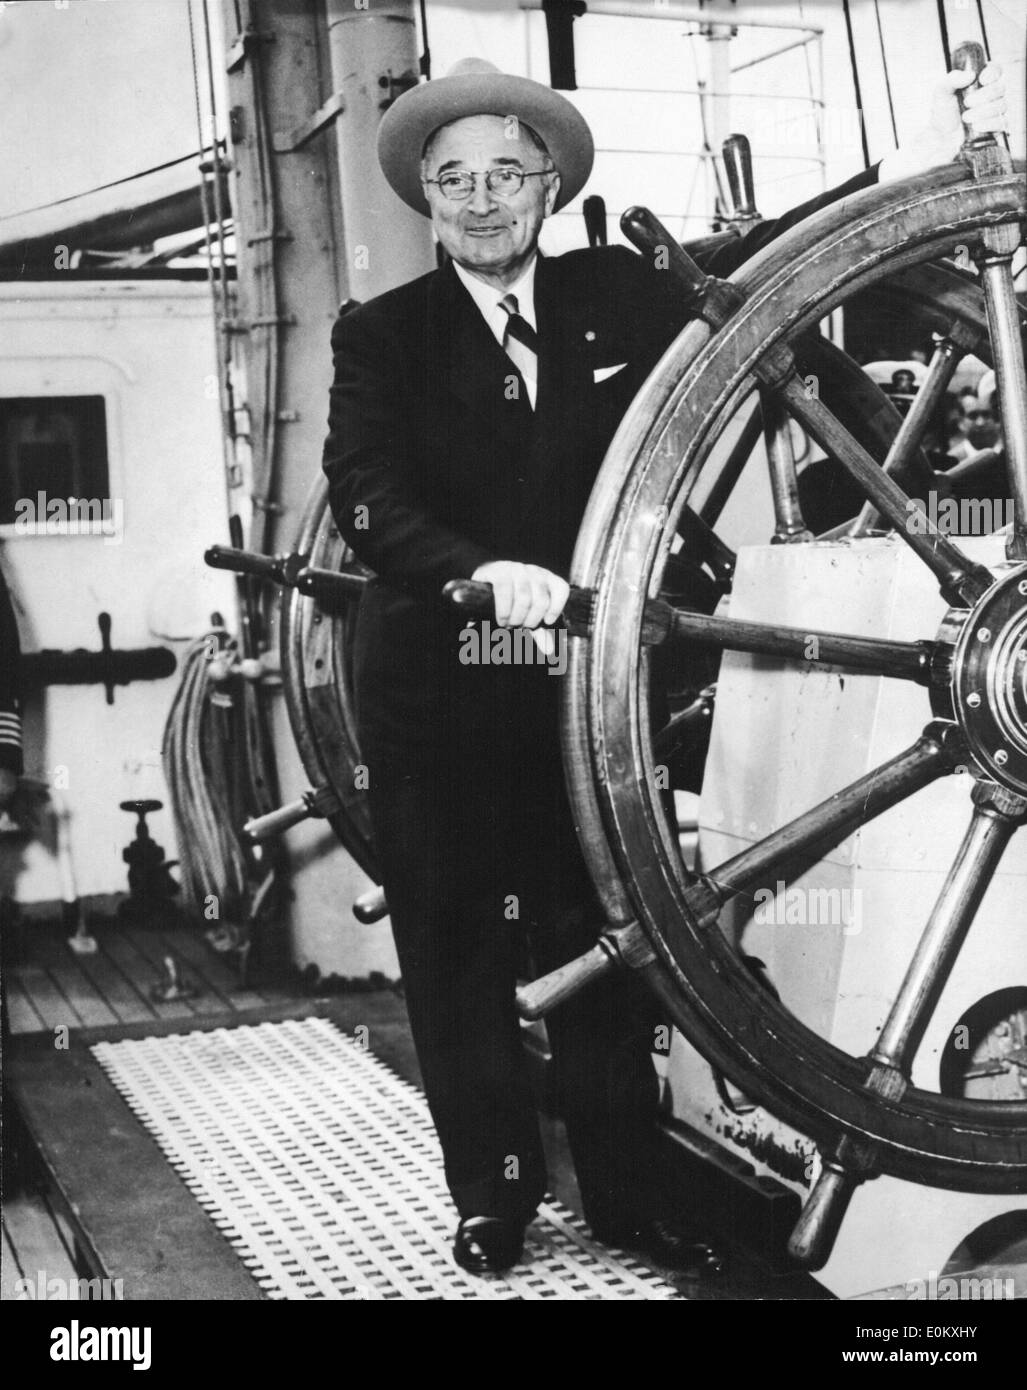 President Truman on board the U.S. Coast Guard ship the 'Eagle' Stock Photo